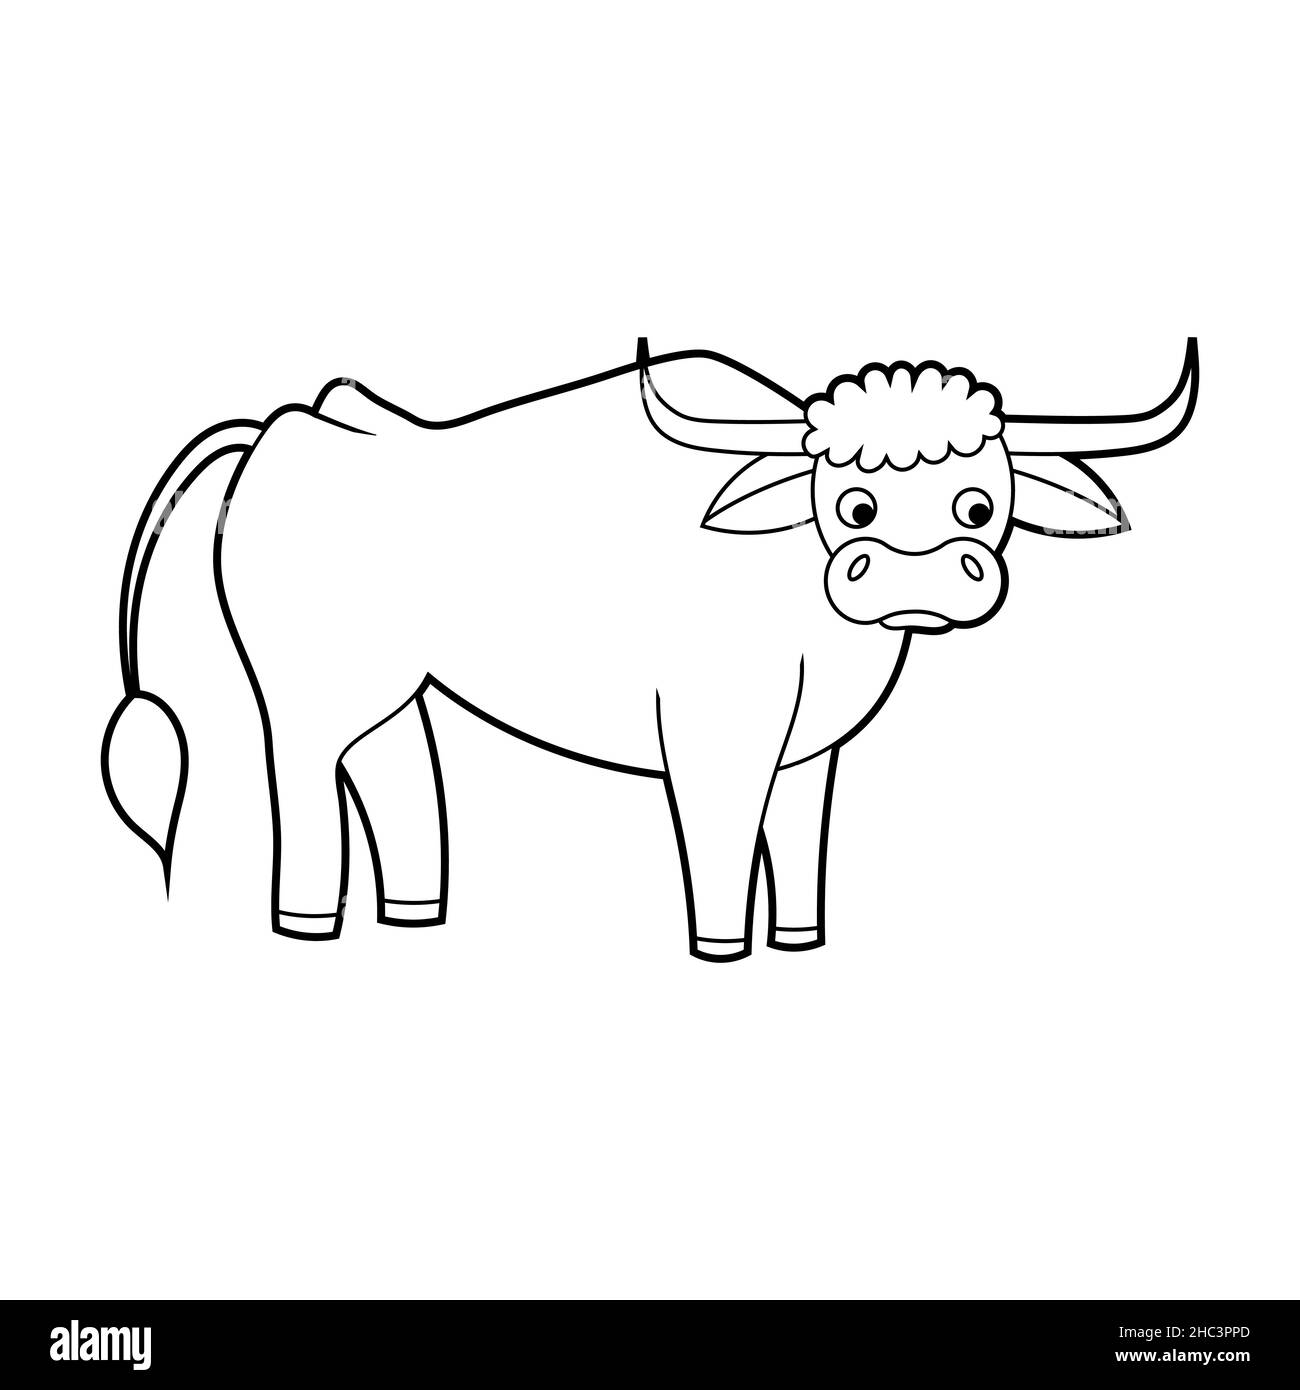 Livre de coloriage pour enfants.Un animal agricole est une vache.Vecteur isolé sur fond blanc Illustration de Vecteur